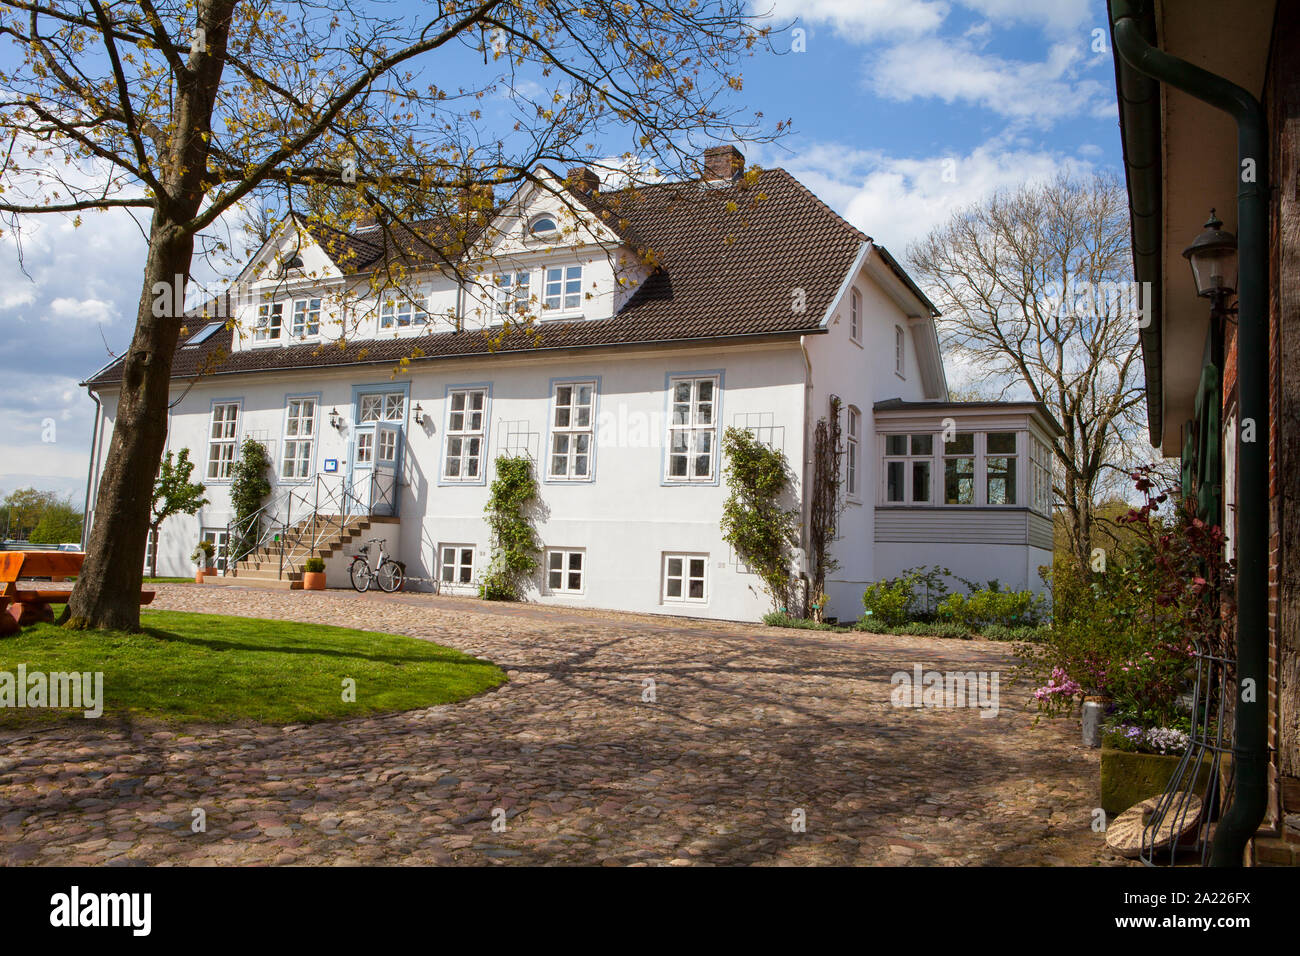 Amtshaus, manor house, Bederkesa Castle, Bad Bederkesa, Lower Saxony, Germany Stock Photo